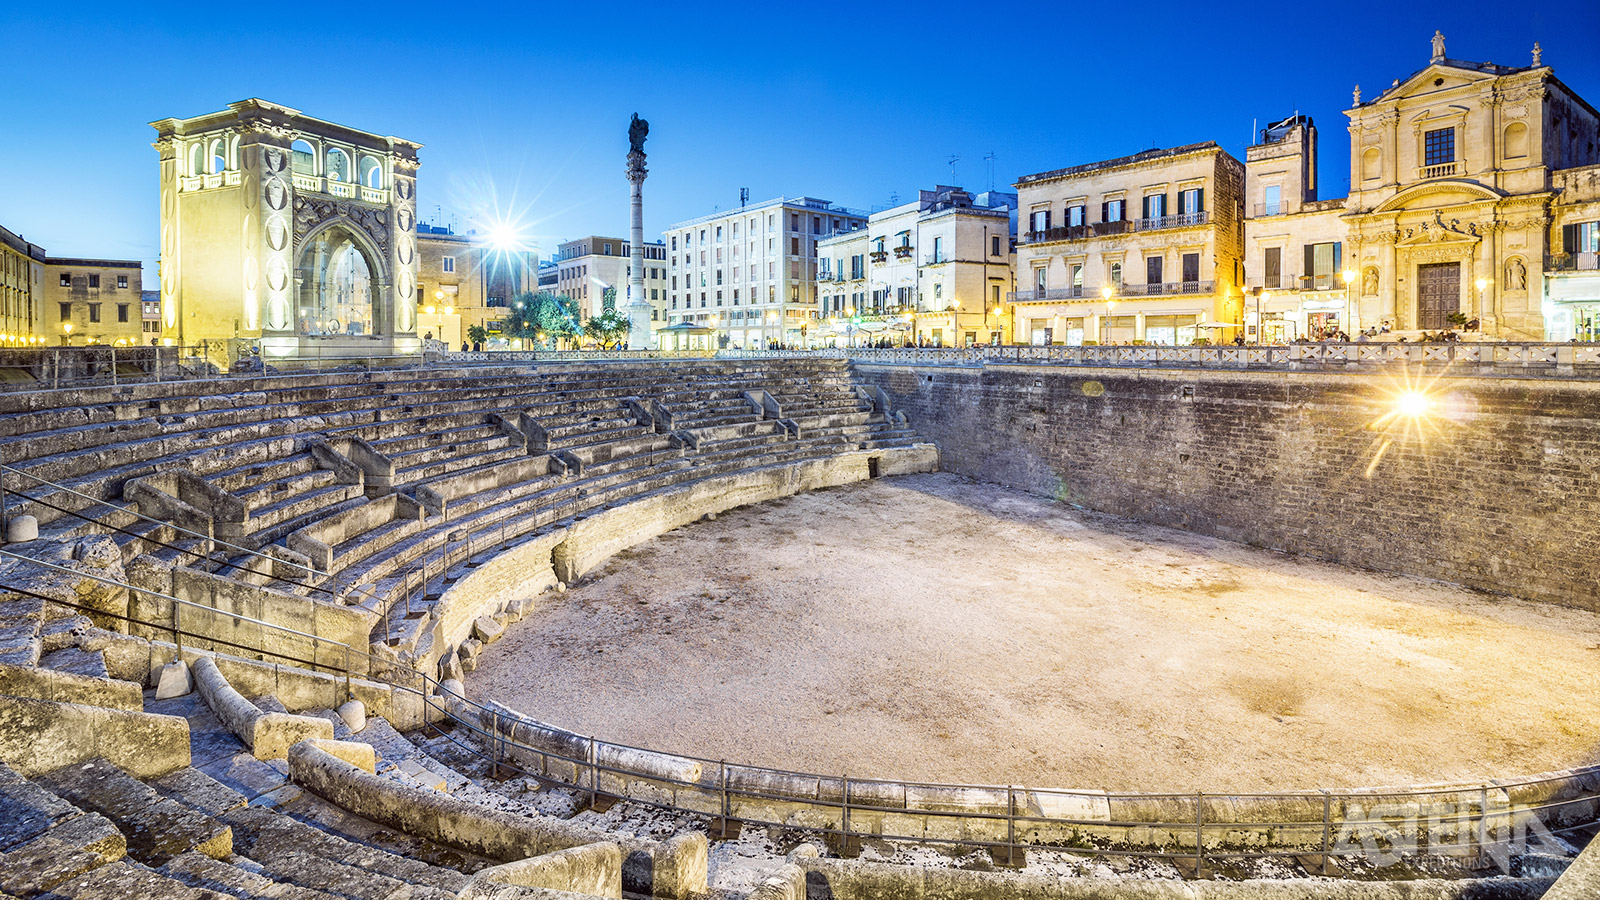 In Lecce wandel je langs het Piazza Sant’Oronzo met zijn amfitheater